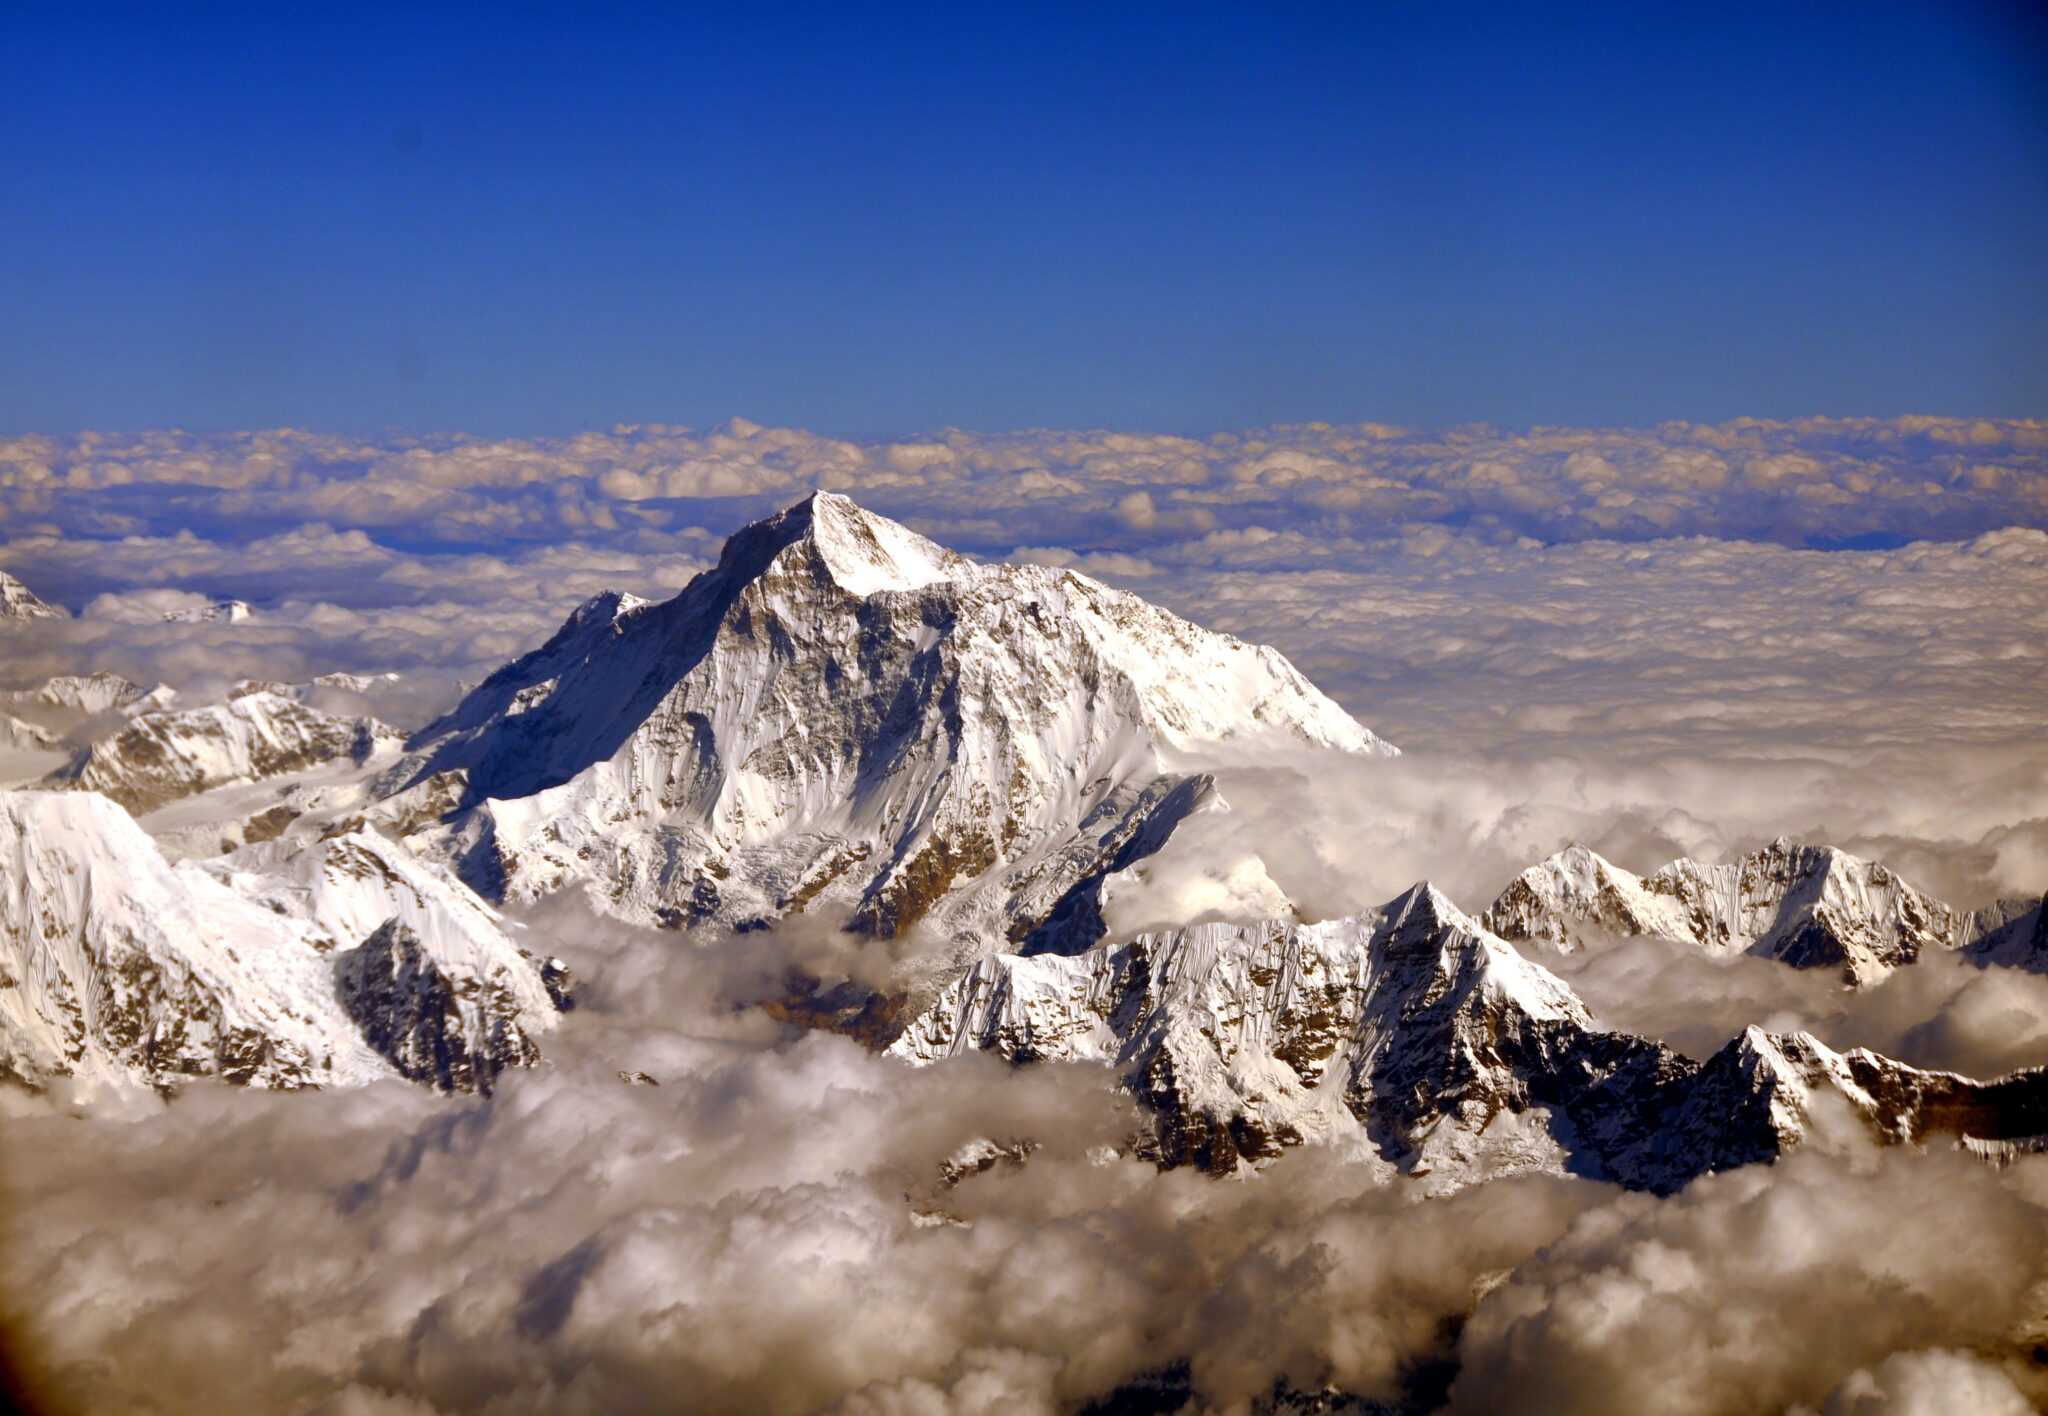 Где находится самая высокая гора эверест